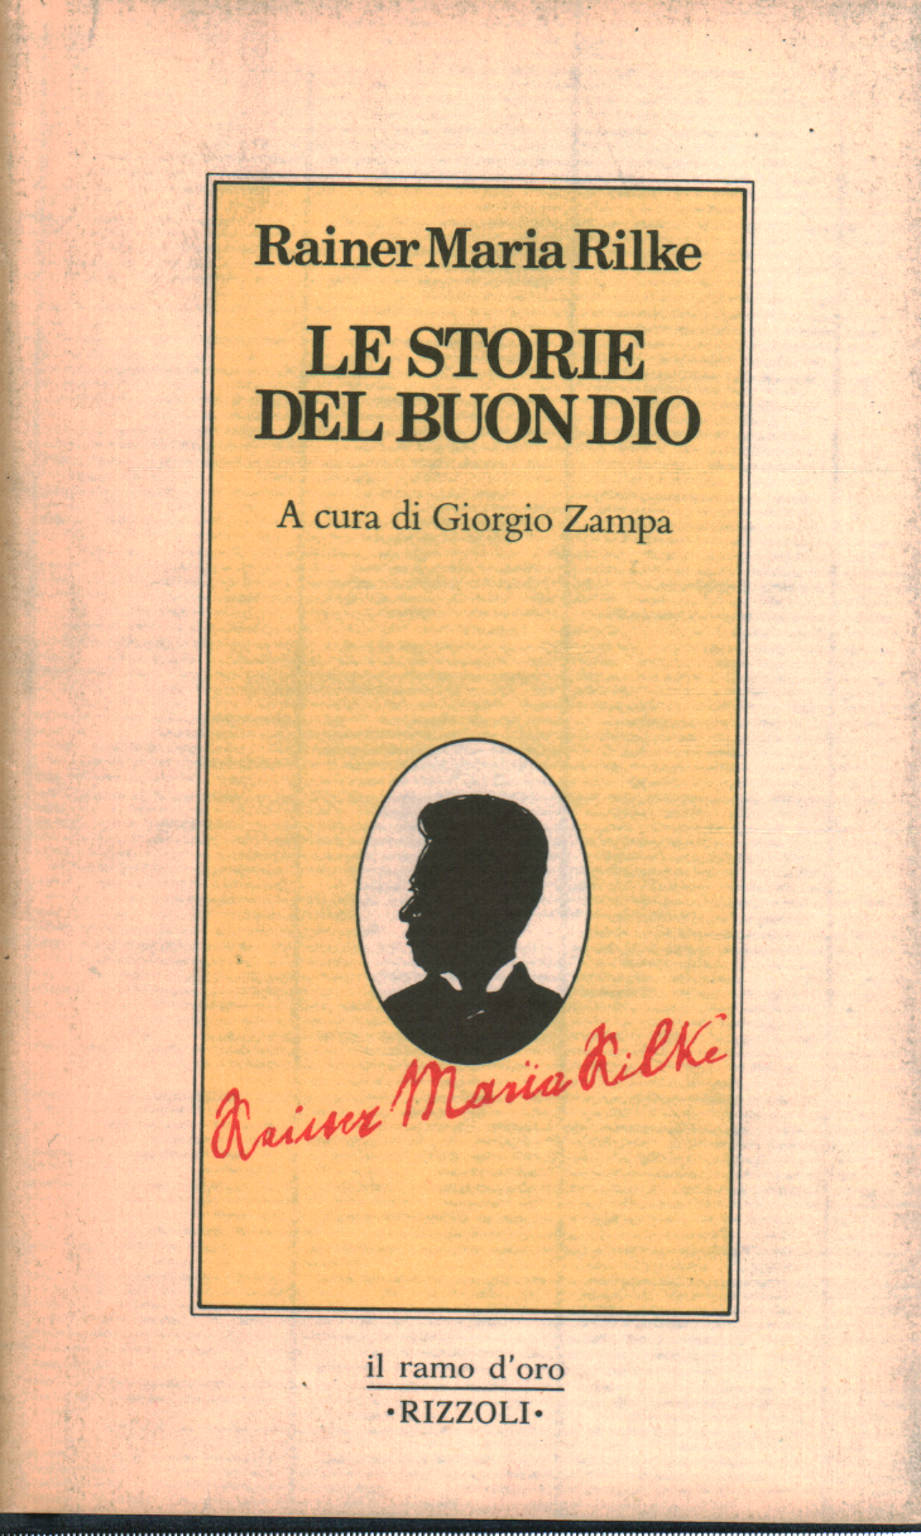 Geschichten vom lieben Gott, Rainer Maria Rilke